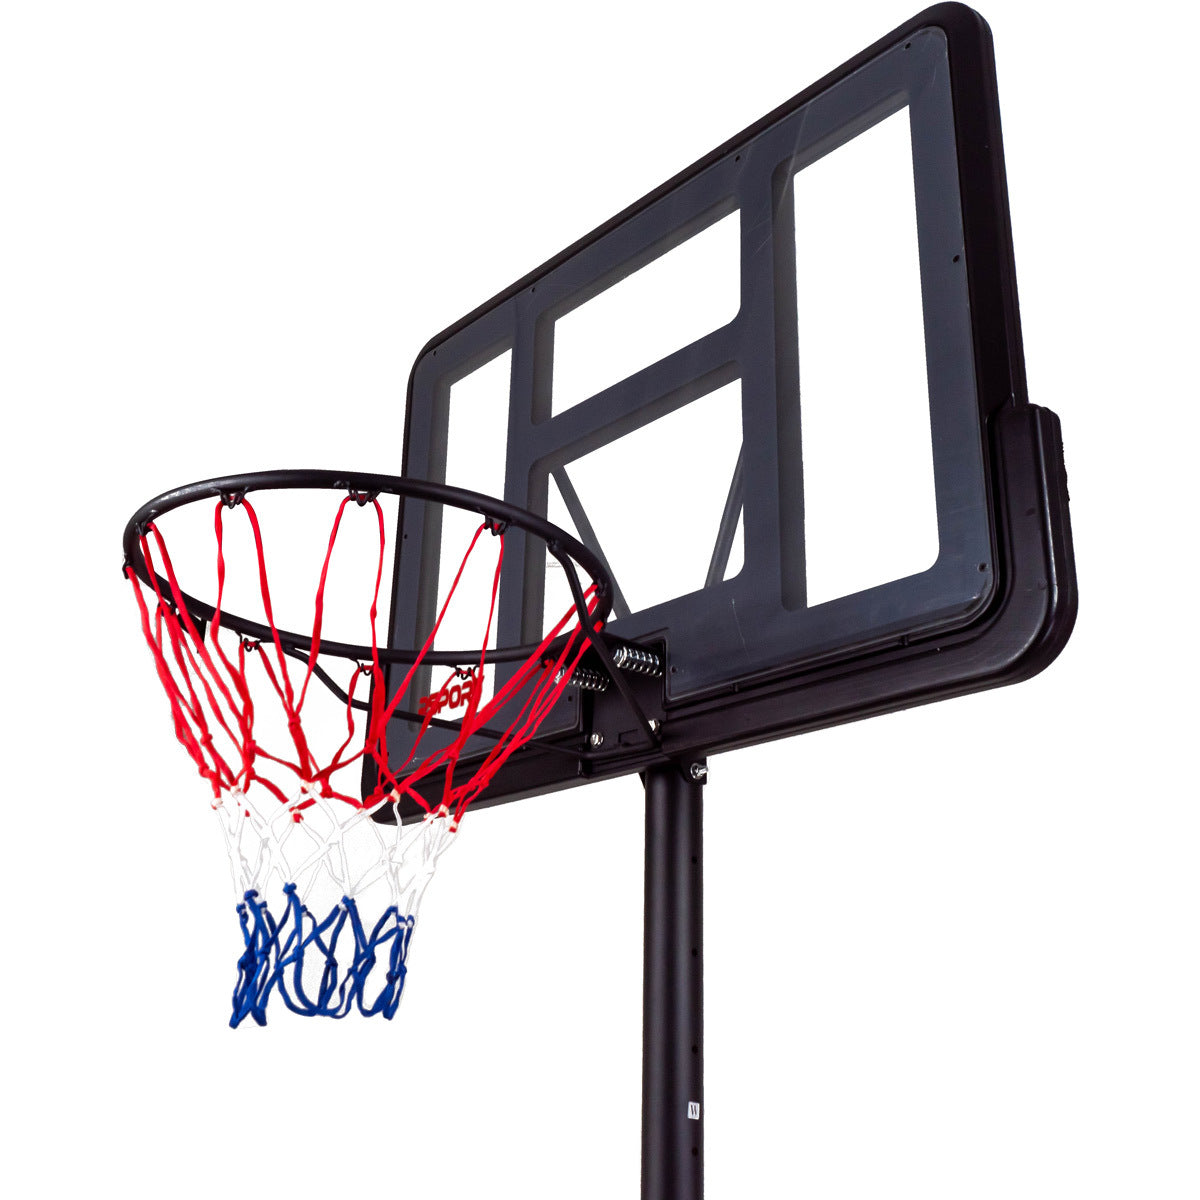 ProSport Panier de Basket Exterieur - Panier Basket sur Pied remplissable  3m05 - Hauteur réglable de 1,5 à 3,05m - Panier de Basket Enfant et Adulte  en destockage et reconditionné chez DealBurn